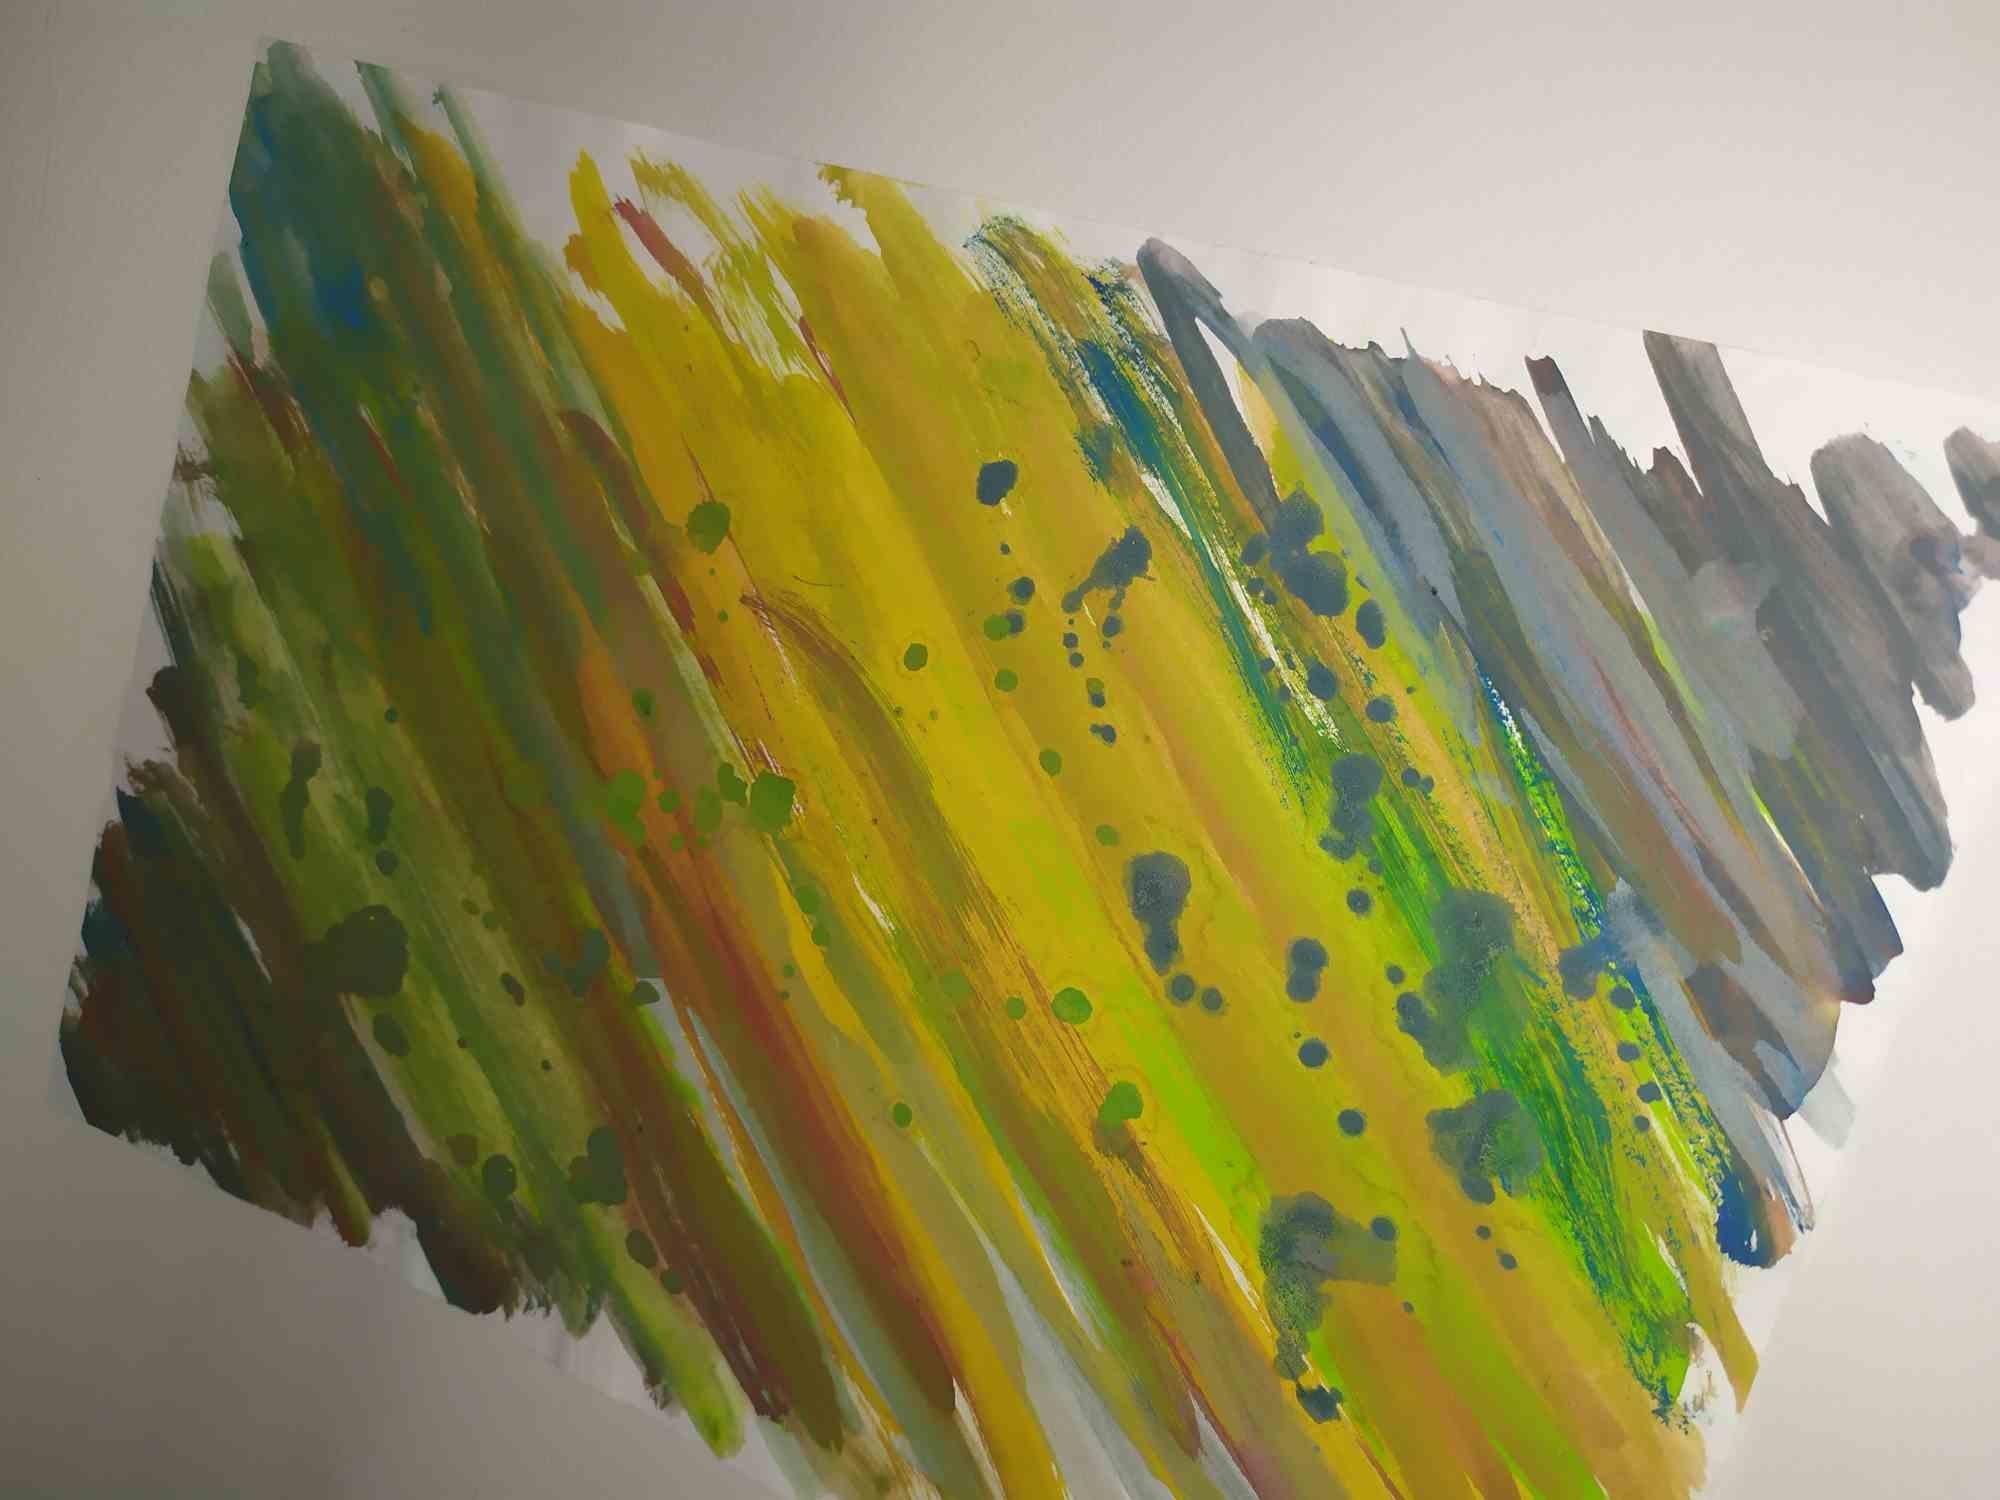 Mixture - Tempera sur papier - 2021 - Painting de Contempologyc E.M.